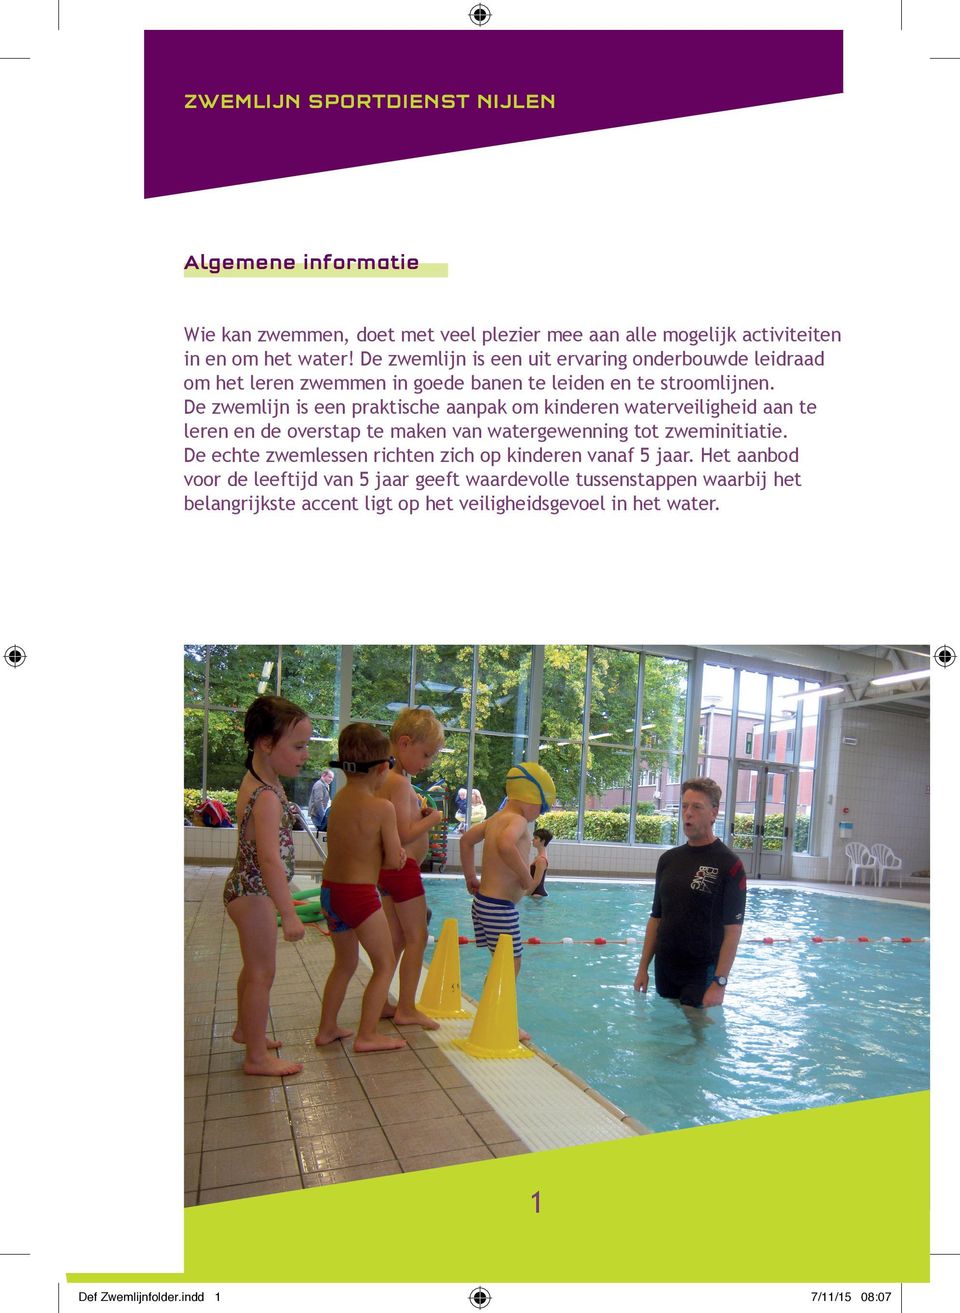 De zwemlijn is een praktische aanpak om kinderen waterveiligheid aan te leren en de overstap te maken van watergewenning tot zweminitiatie.